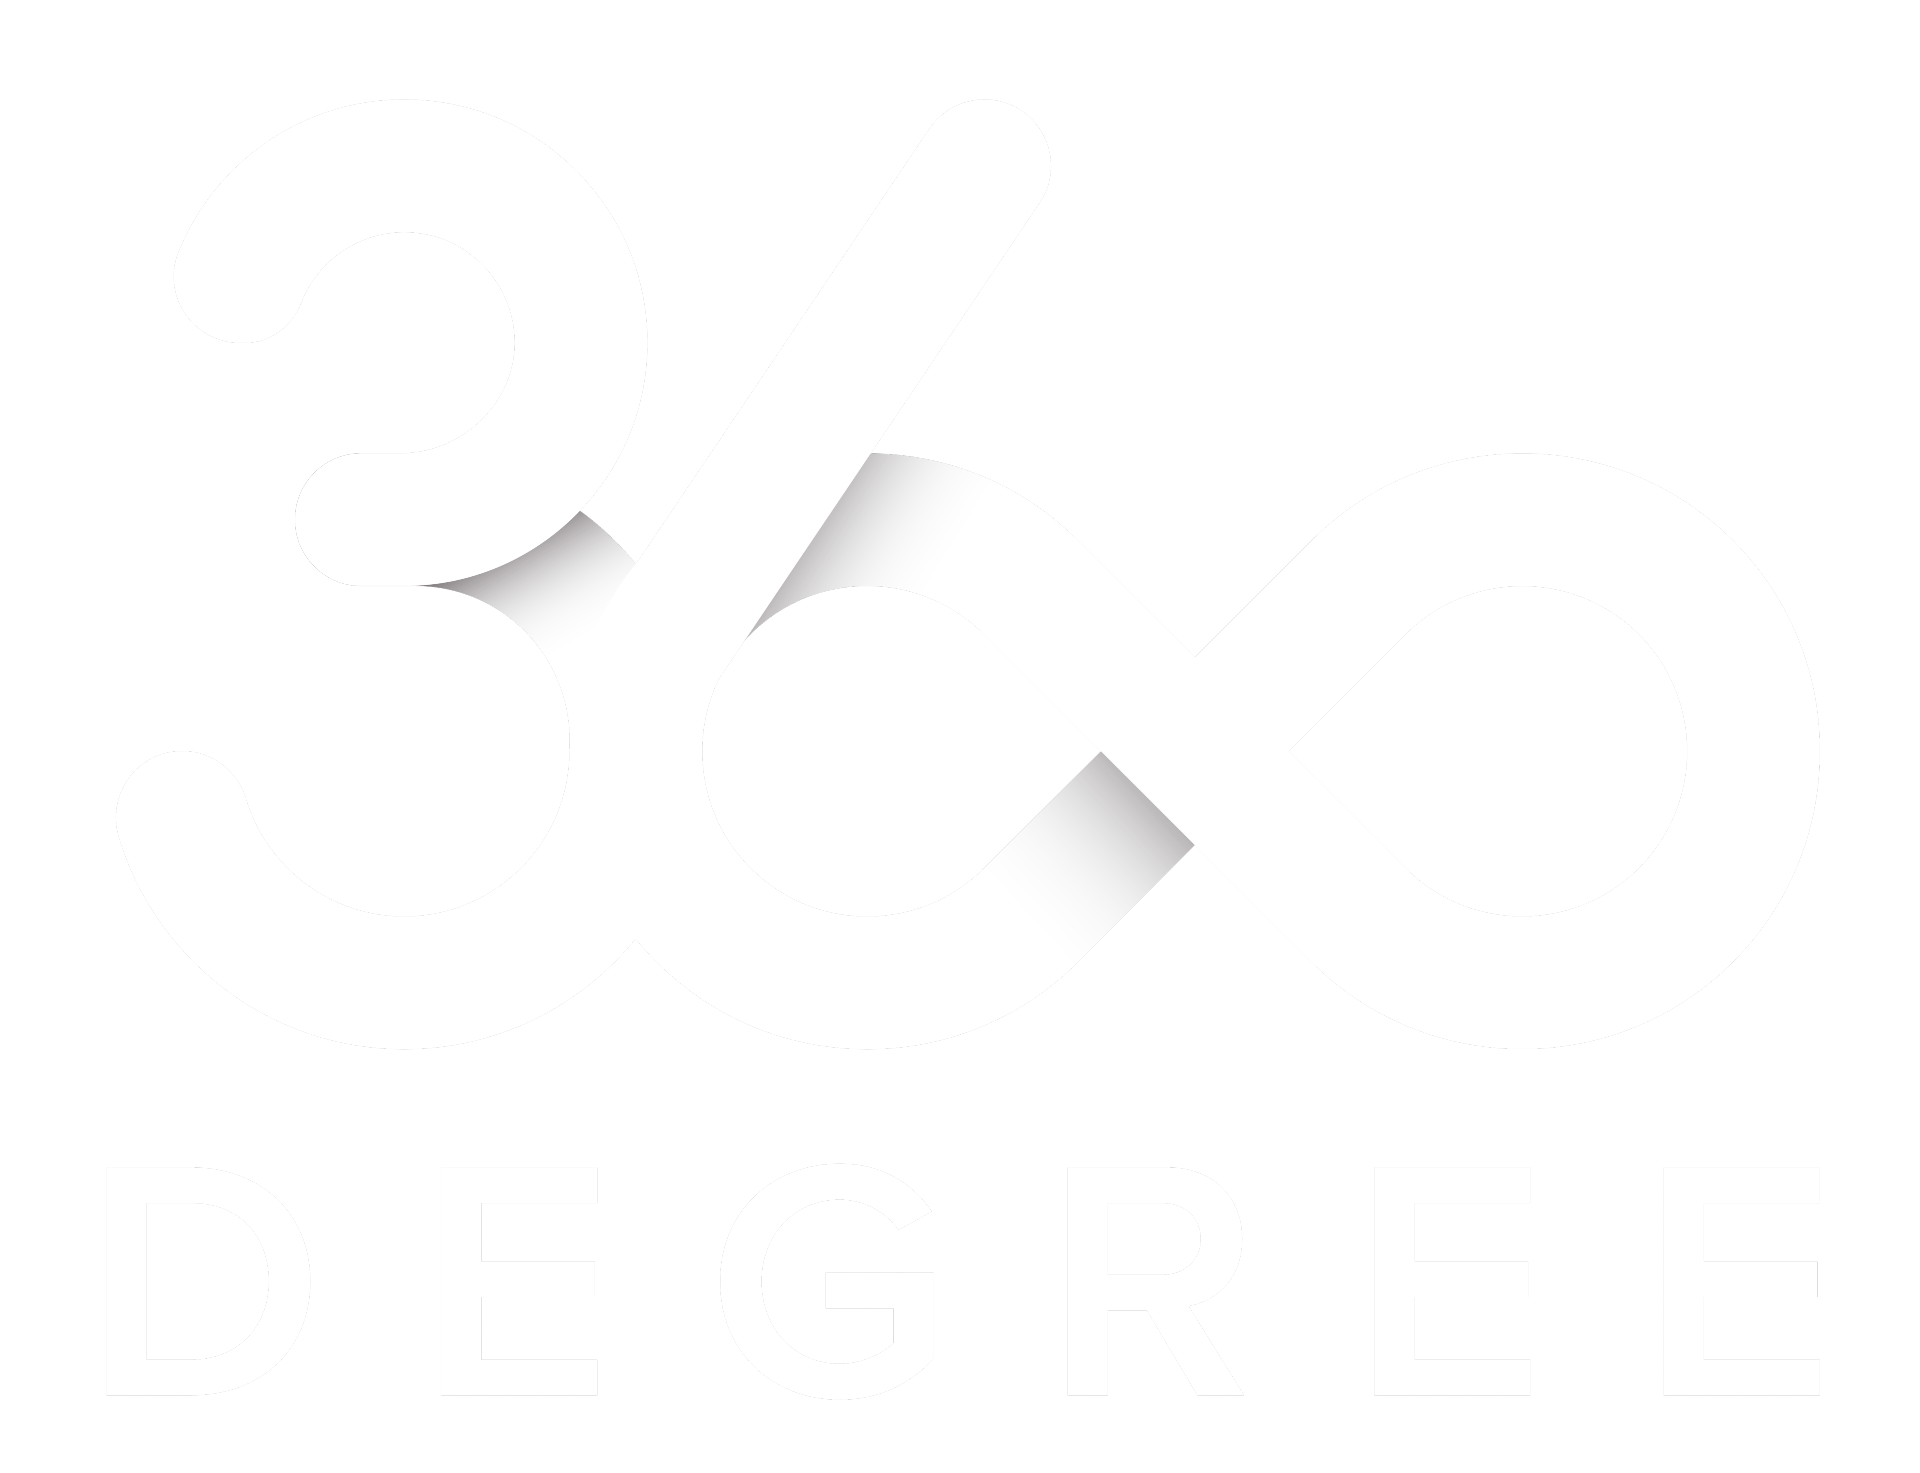 360DegreeLTD